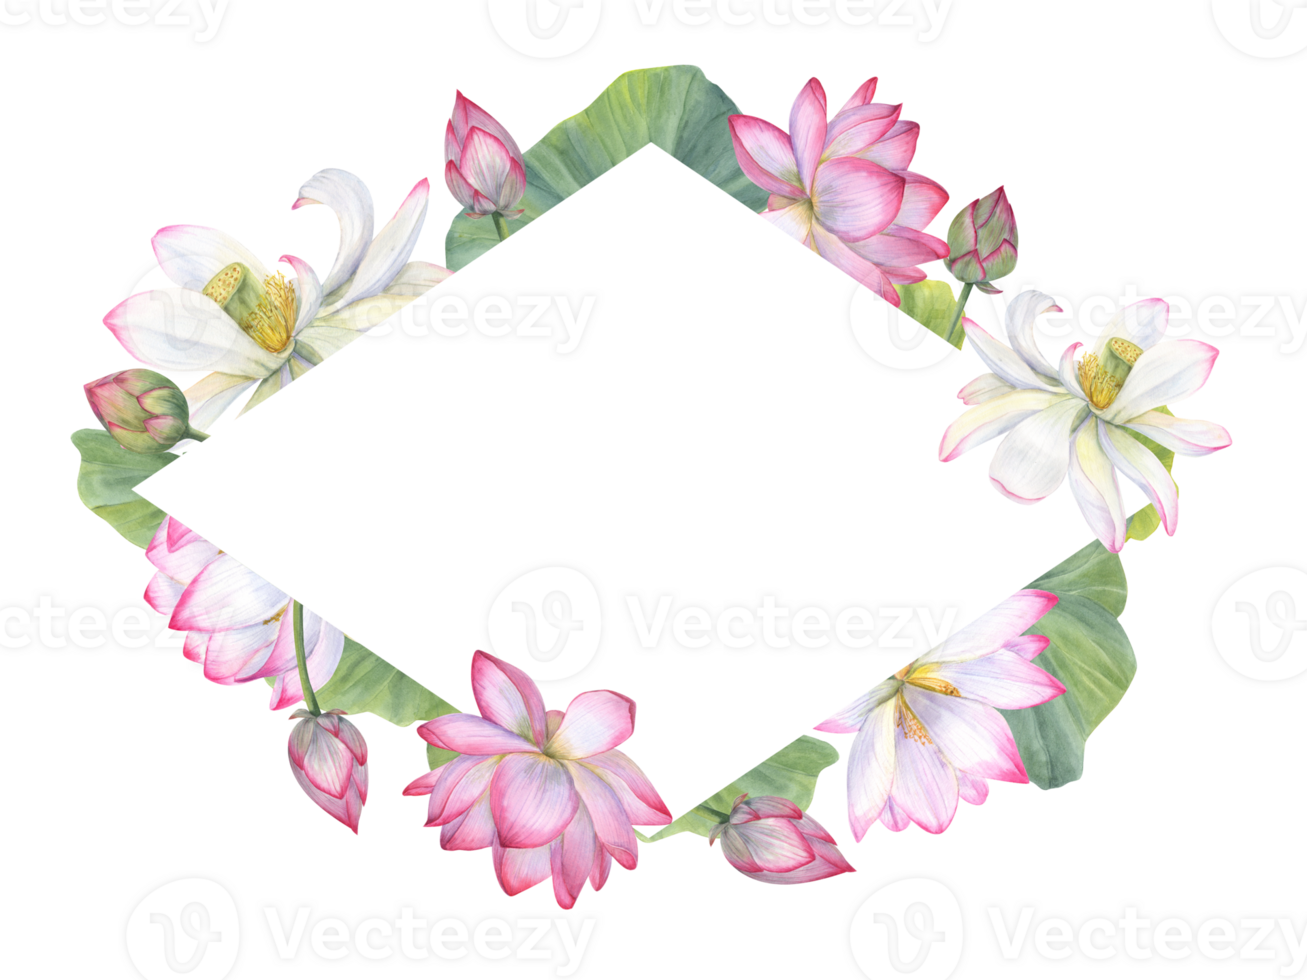 ruit kader met Indisch heilig lotus bloem, knoppen, bladeren. Vietnamees nationaal bloemen. ruimte voor tekst. waterverf illustratie voor hartelijk groeten, uitnodiging, ansichtkaart ontwerp png